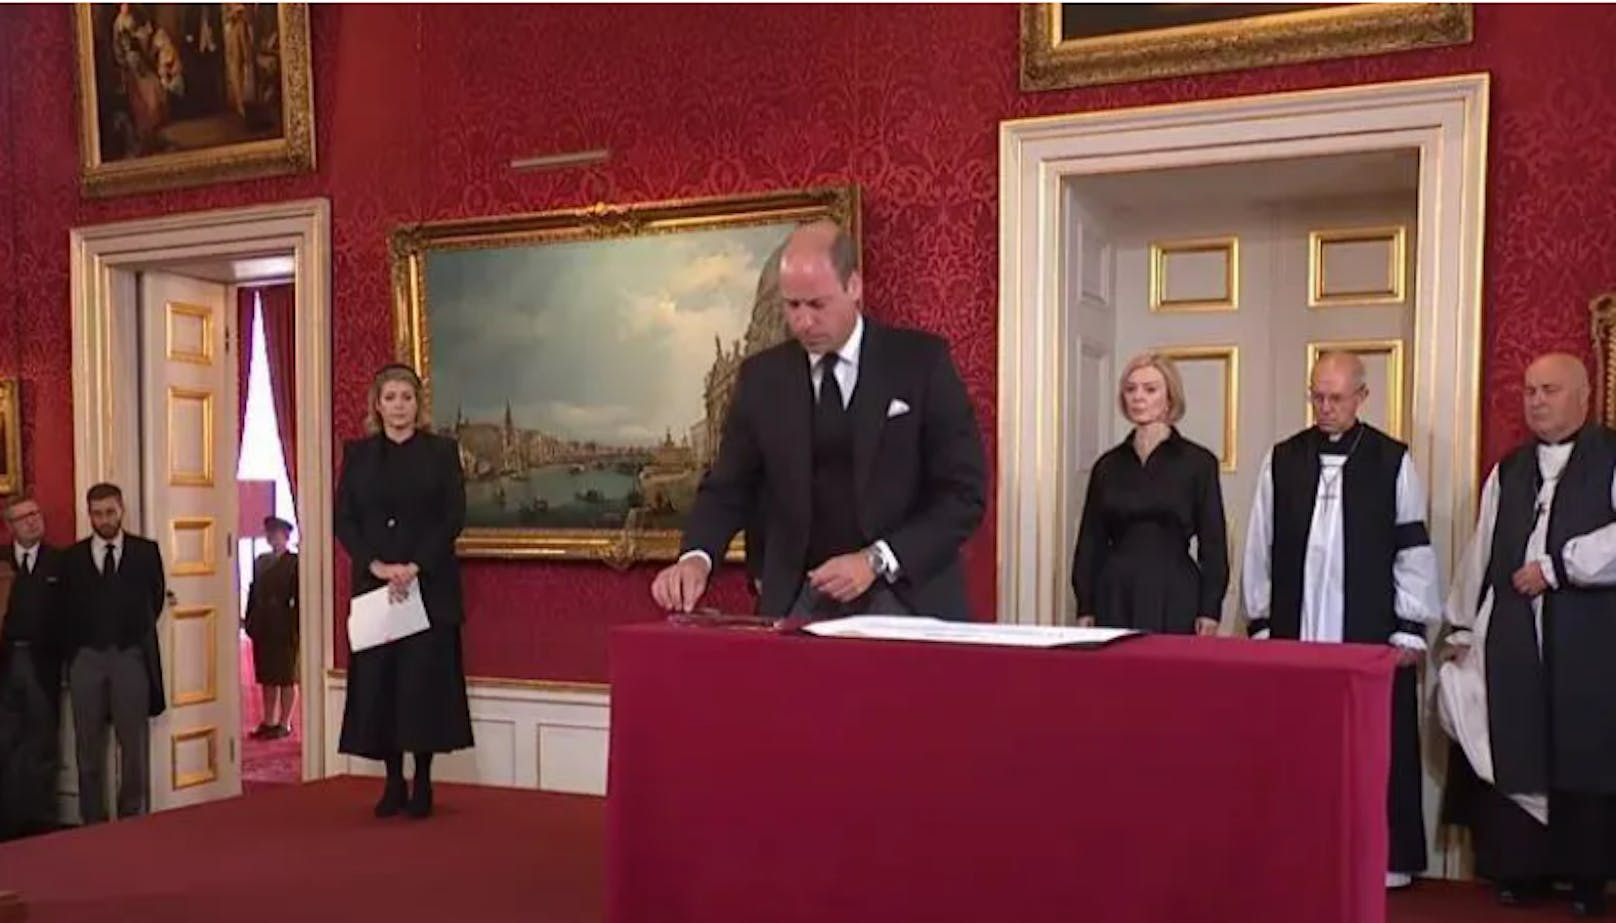 Prinz William unterschreibt als erster die Proklamation.